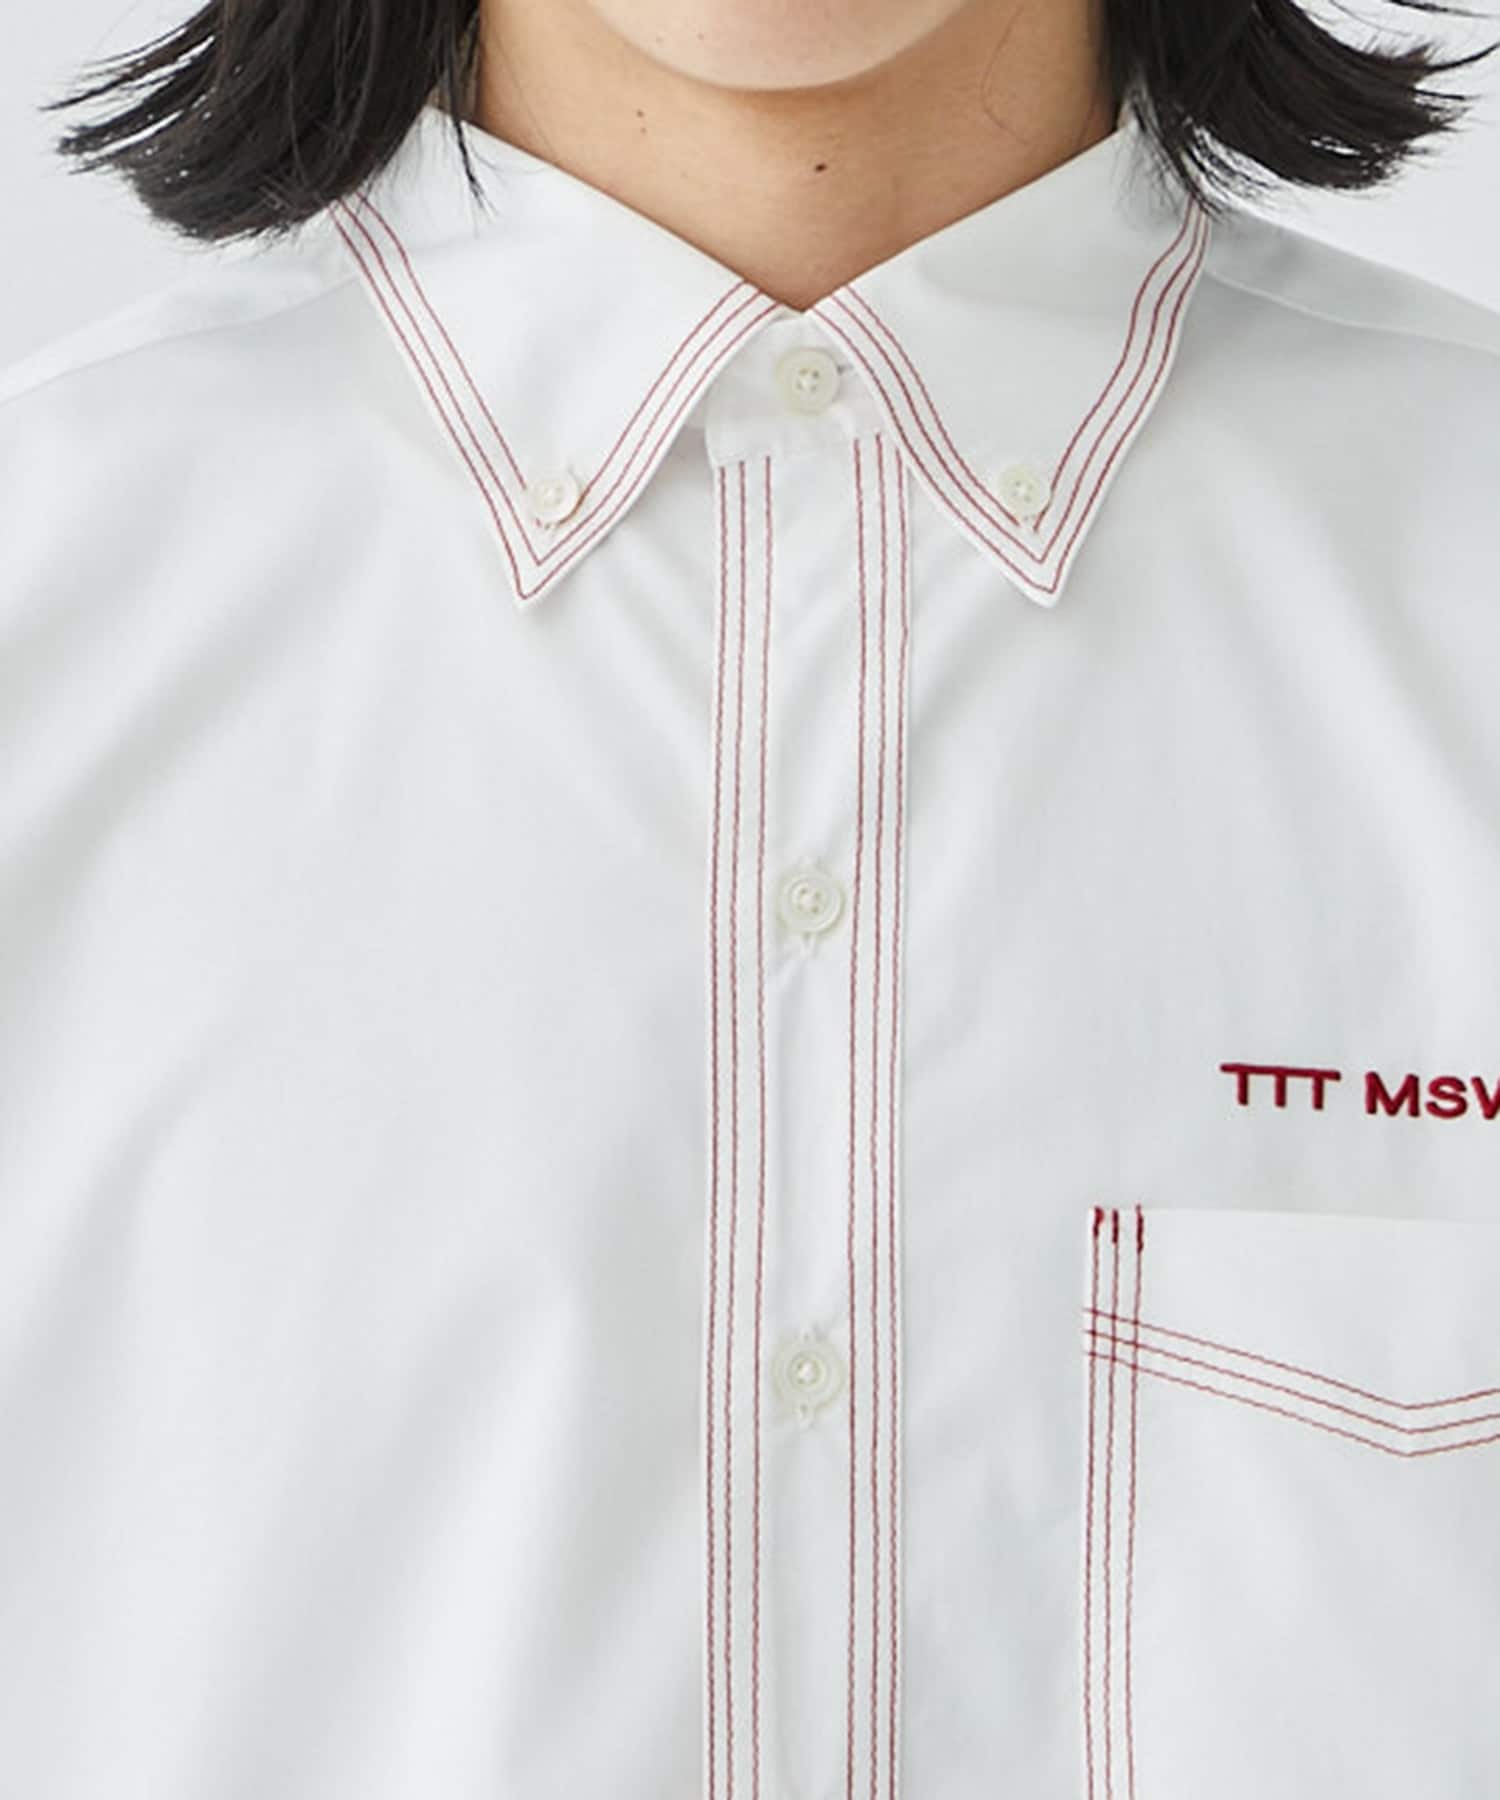 Button down shirt TTT MSW